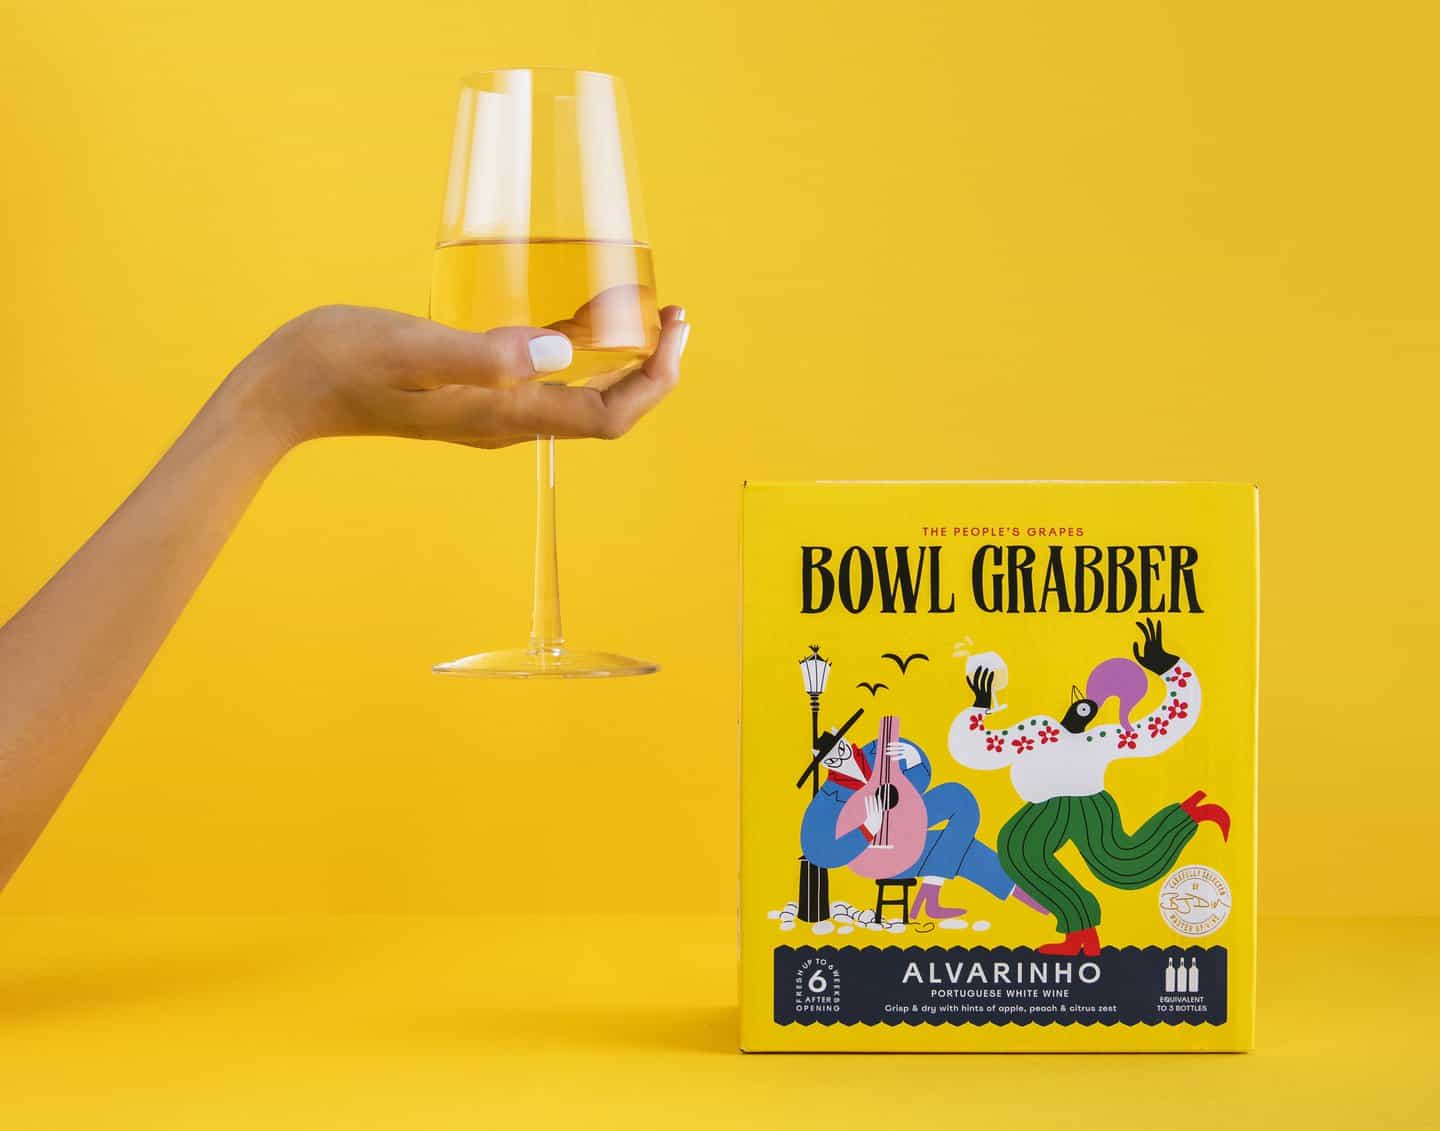 La marca casual Business para Bowl Grabber mantiene su visión de una cultura del vino relajada